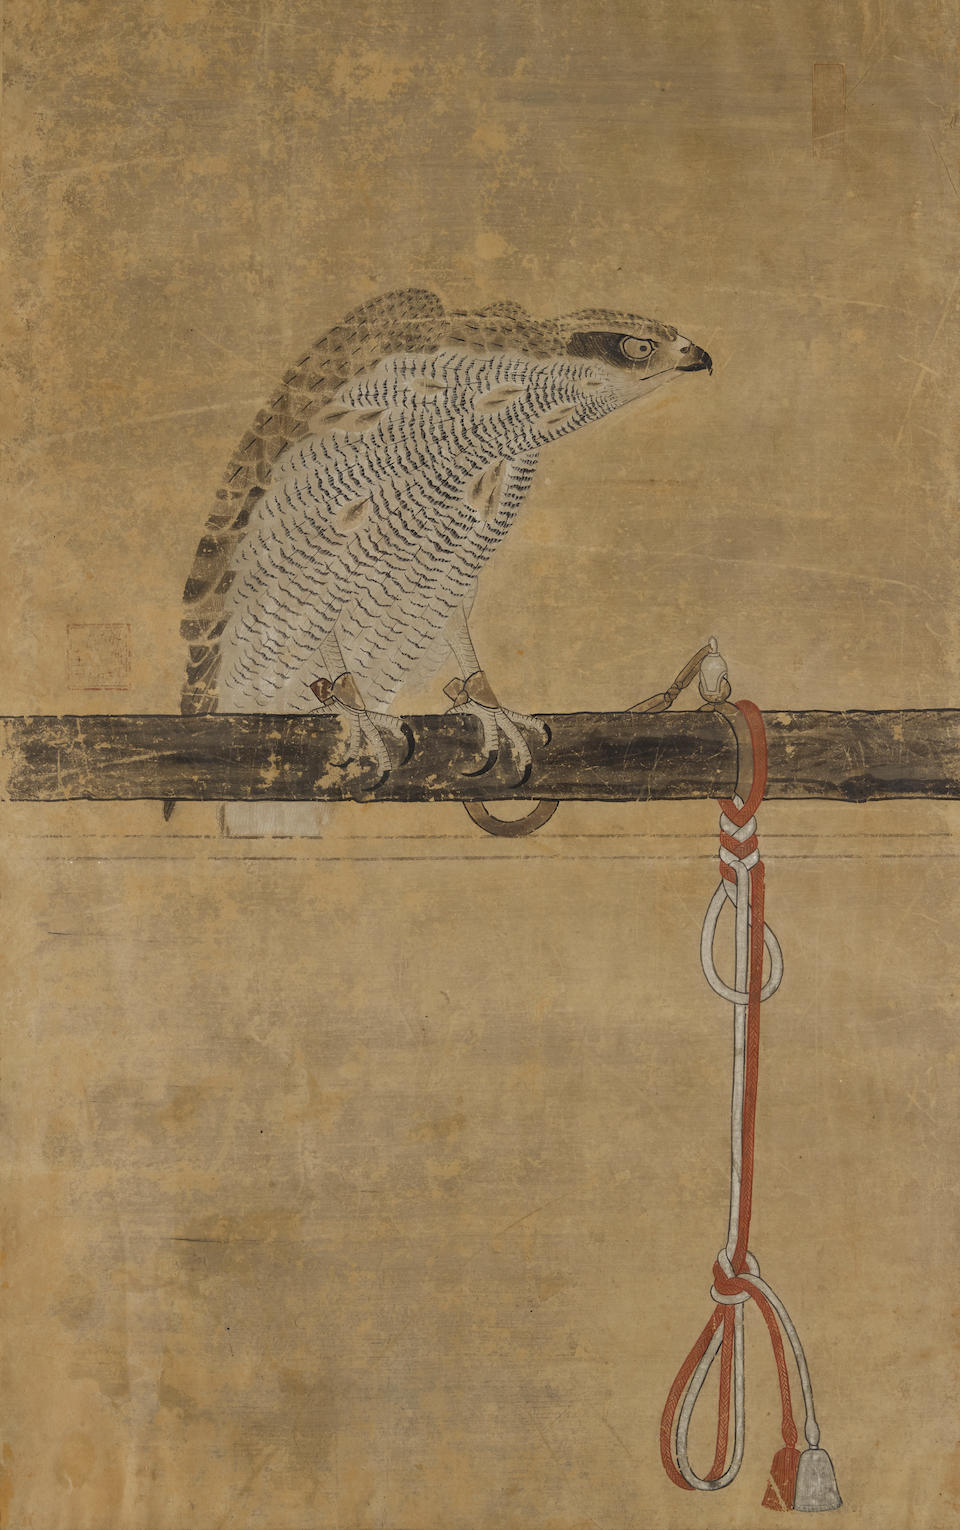 Birds of Prey Artist unknown, Edo period (1615-1868), 18th century